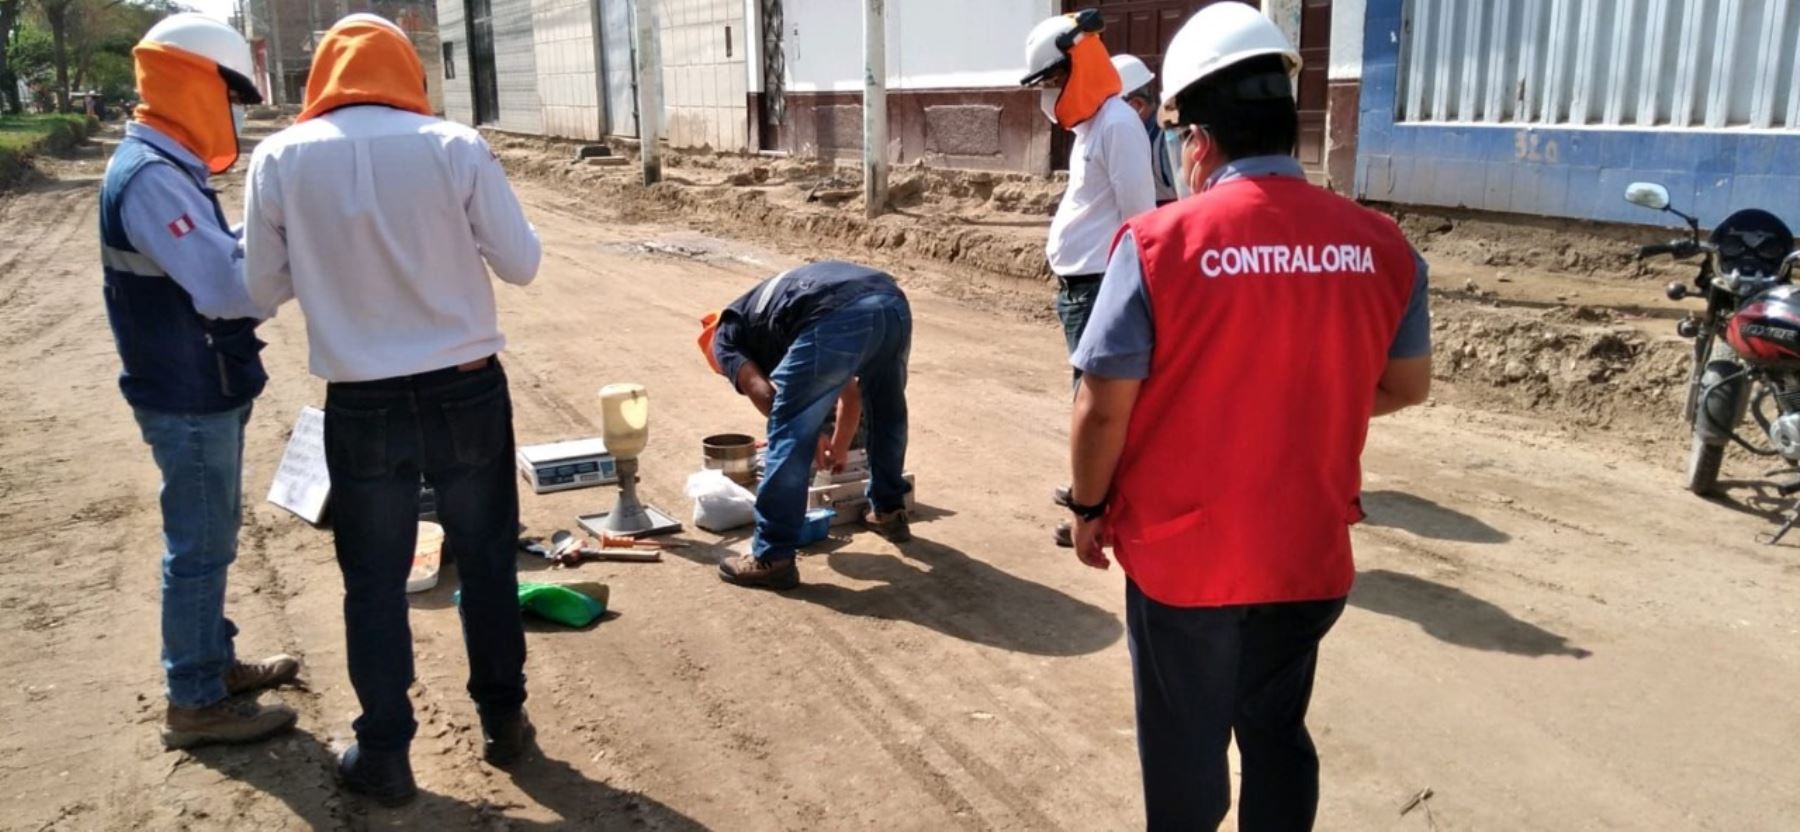 Ferreñafe: Contraloría advierte descuido de municipio provincial en supervisión de obras